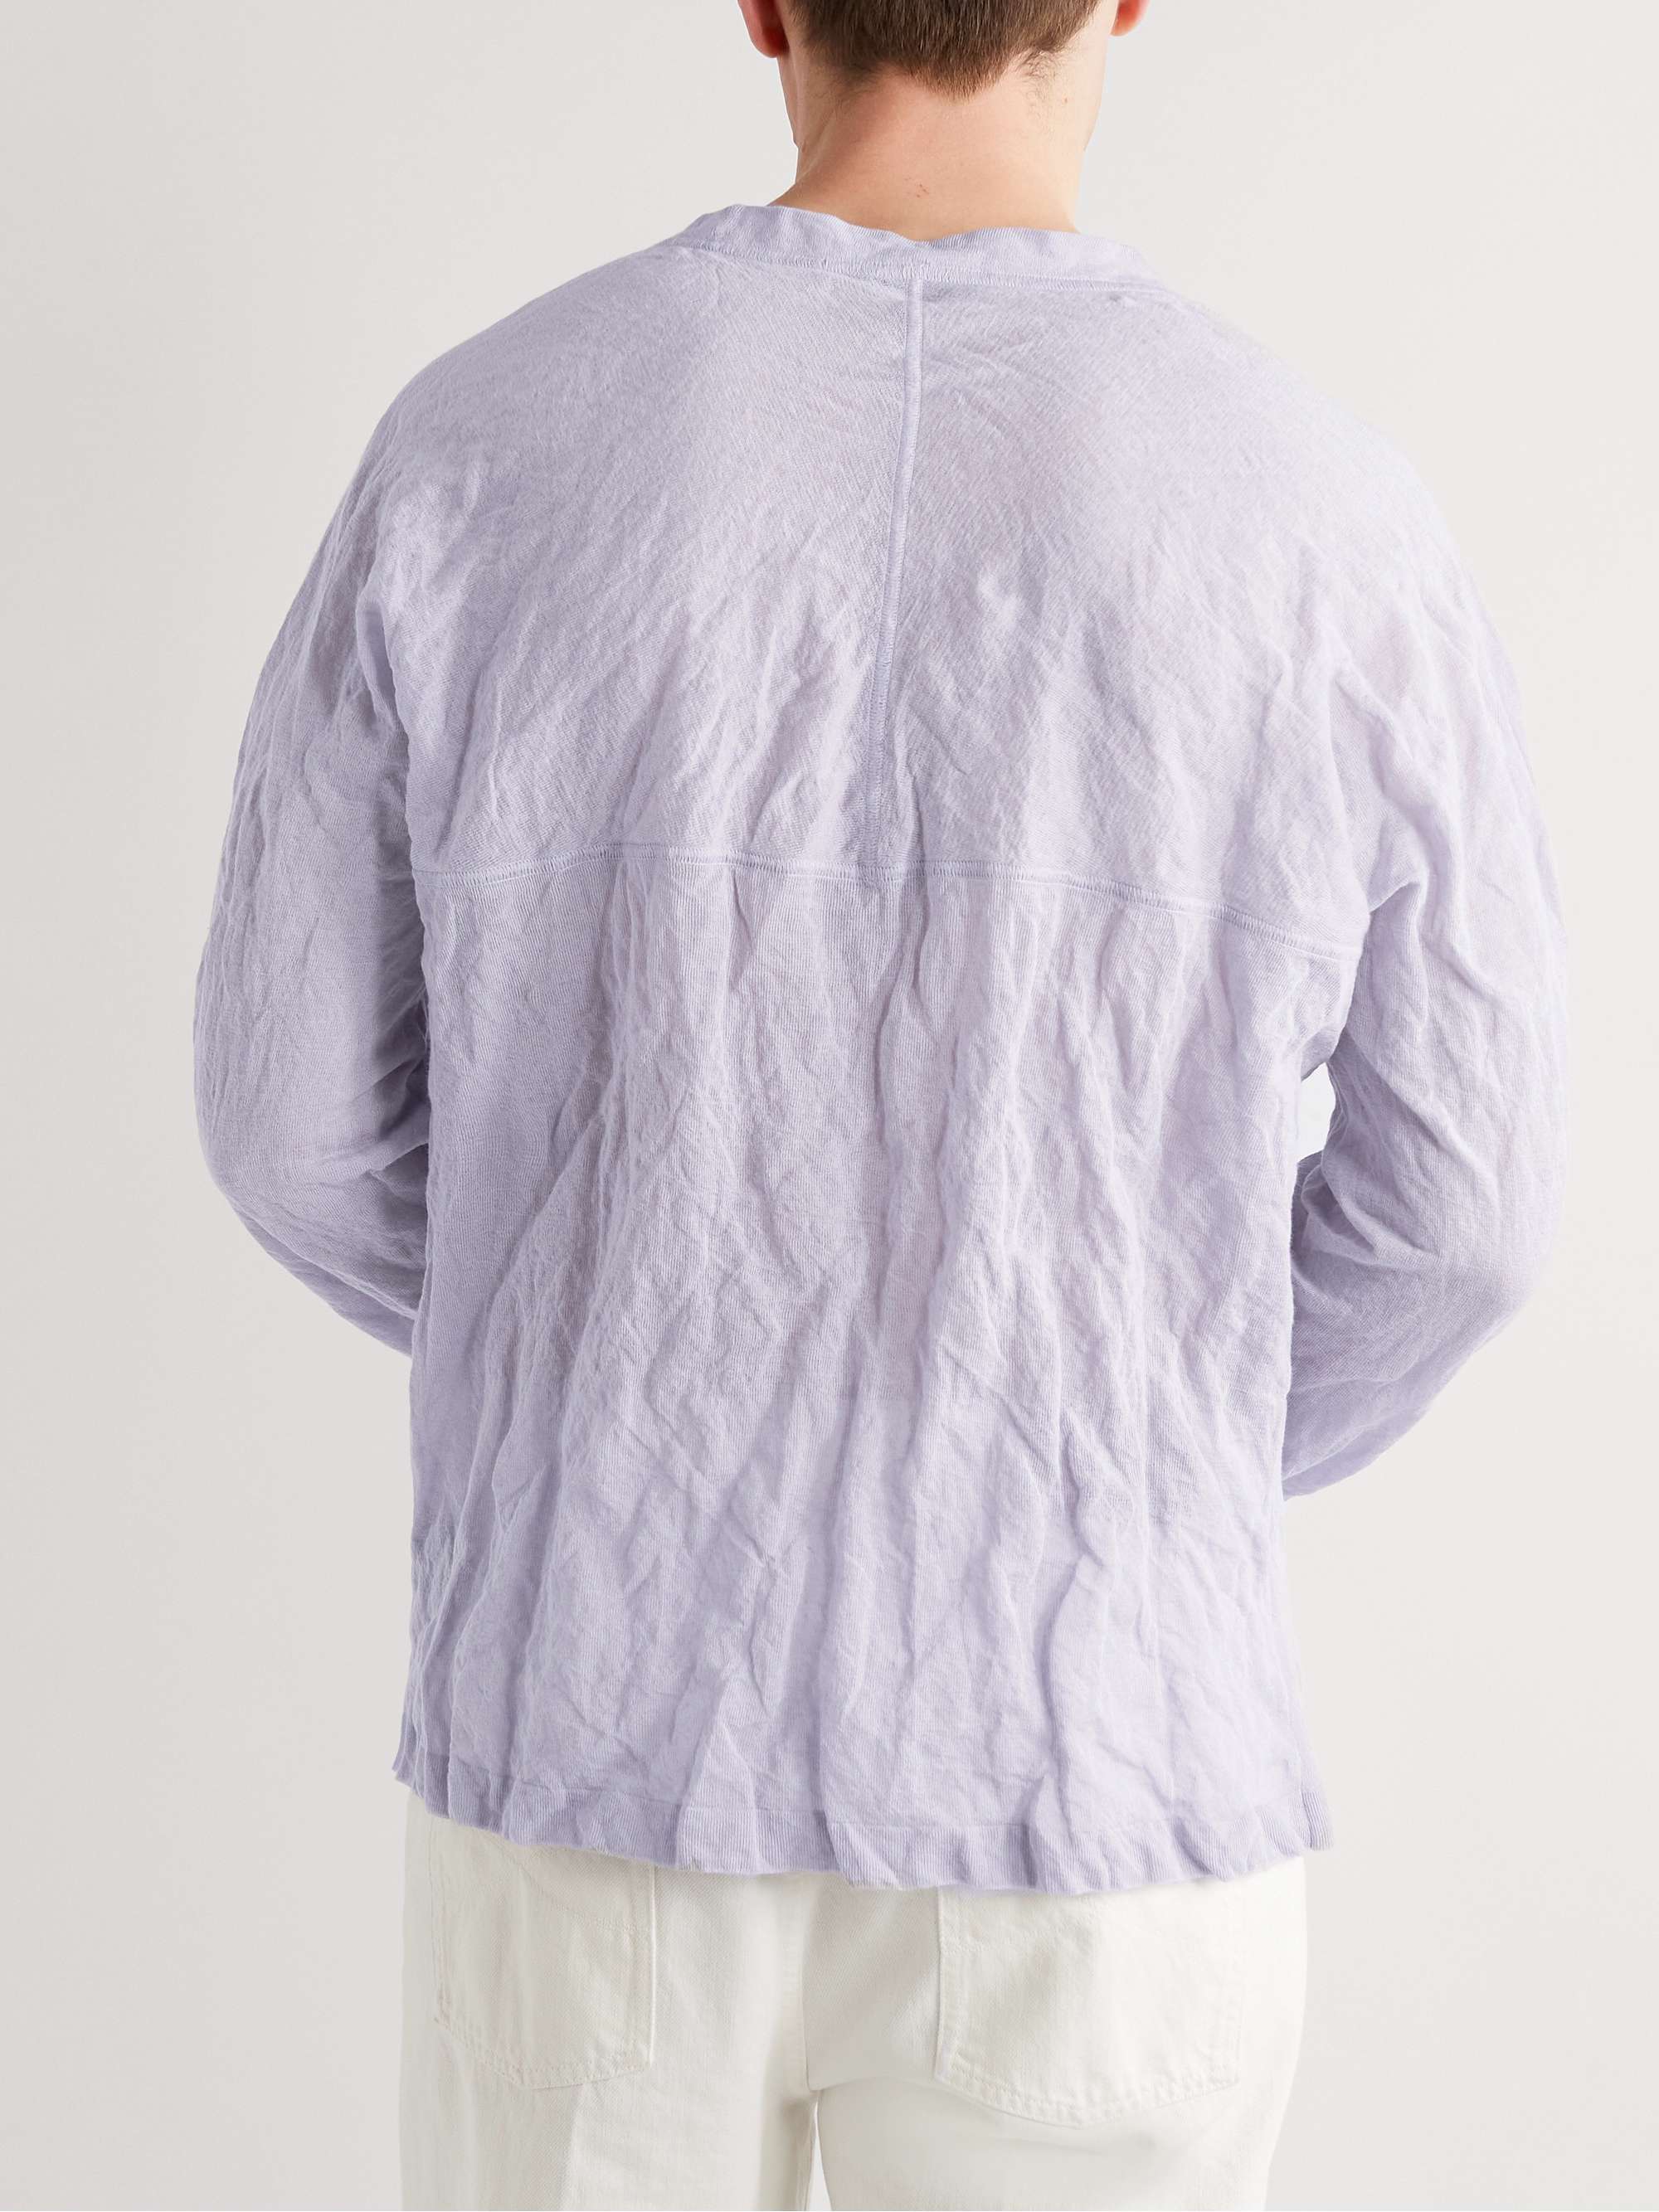 ZEGNA Crinkled Cotton-Blend T-Shirt